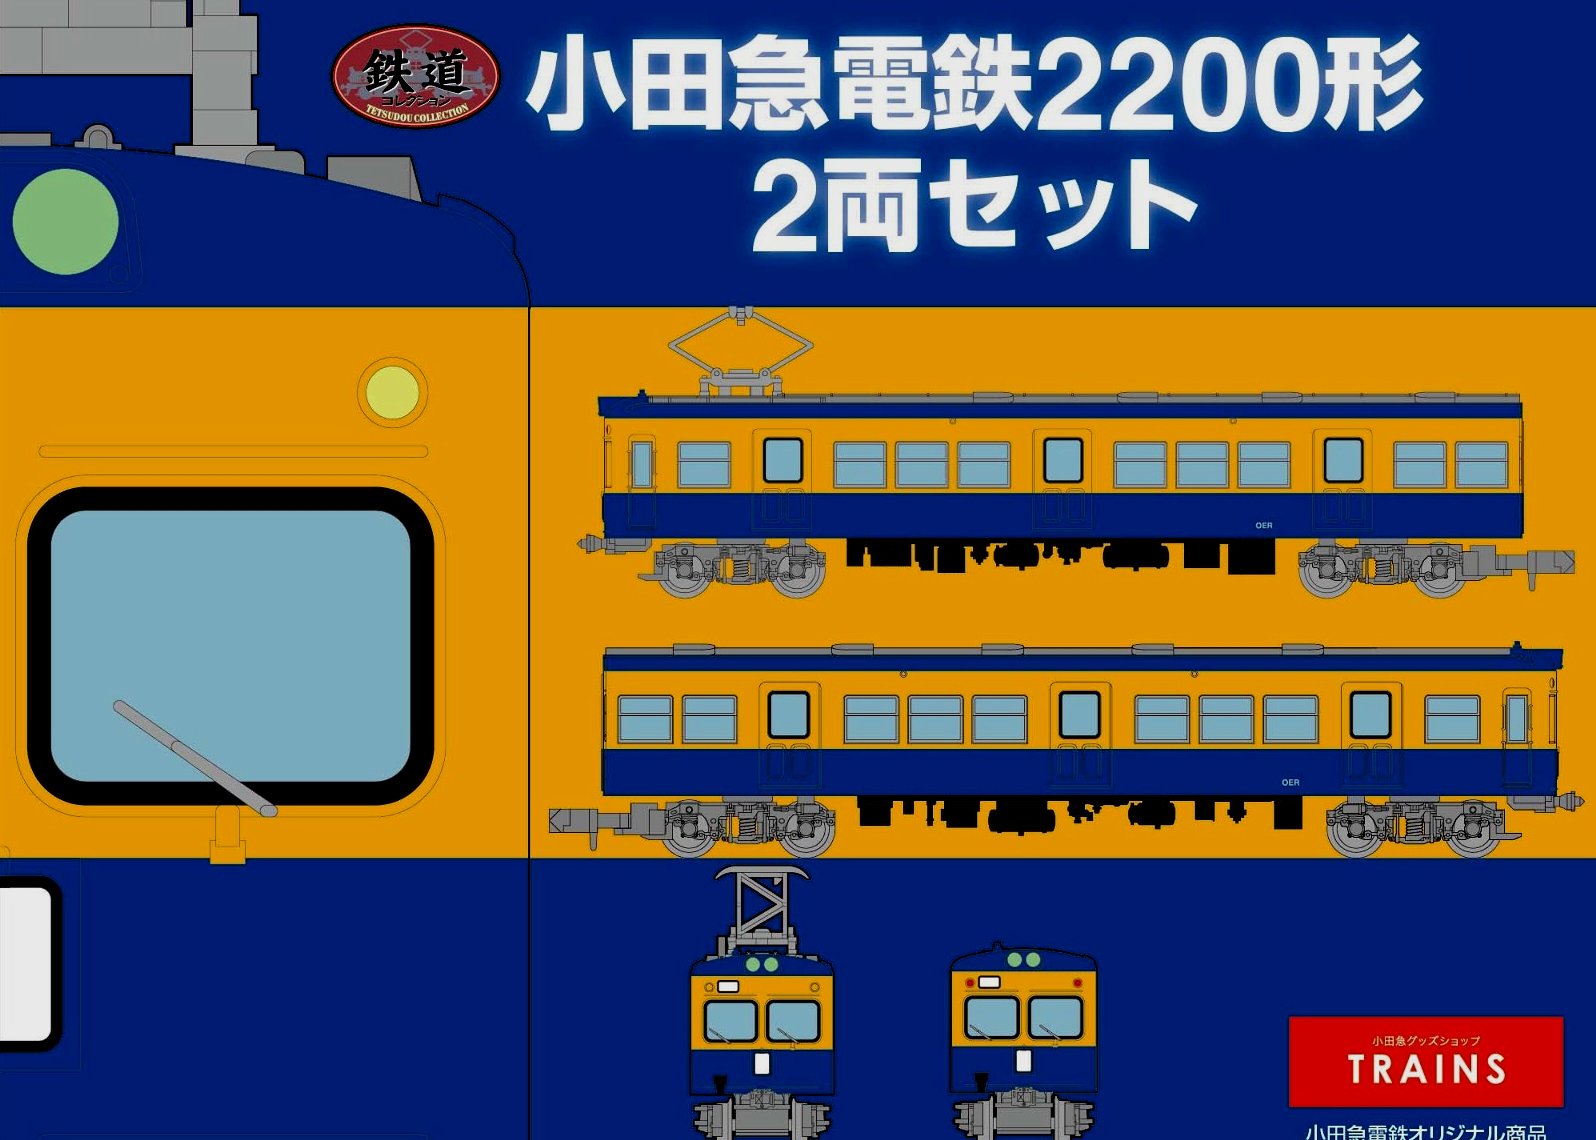 7月9日以降順次発送します！！小田急電鉄オリジナル 鉄道2200形旧塗装2007年に完売した2200形旧塗装をリニューアルしました。TRAINS開業10周年記念商品第2弾です。